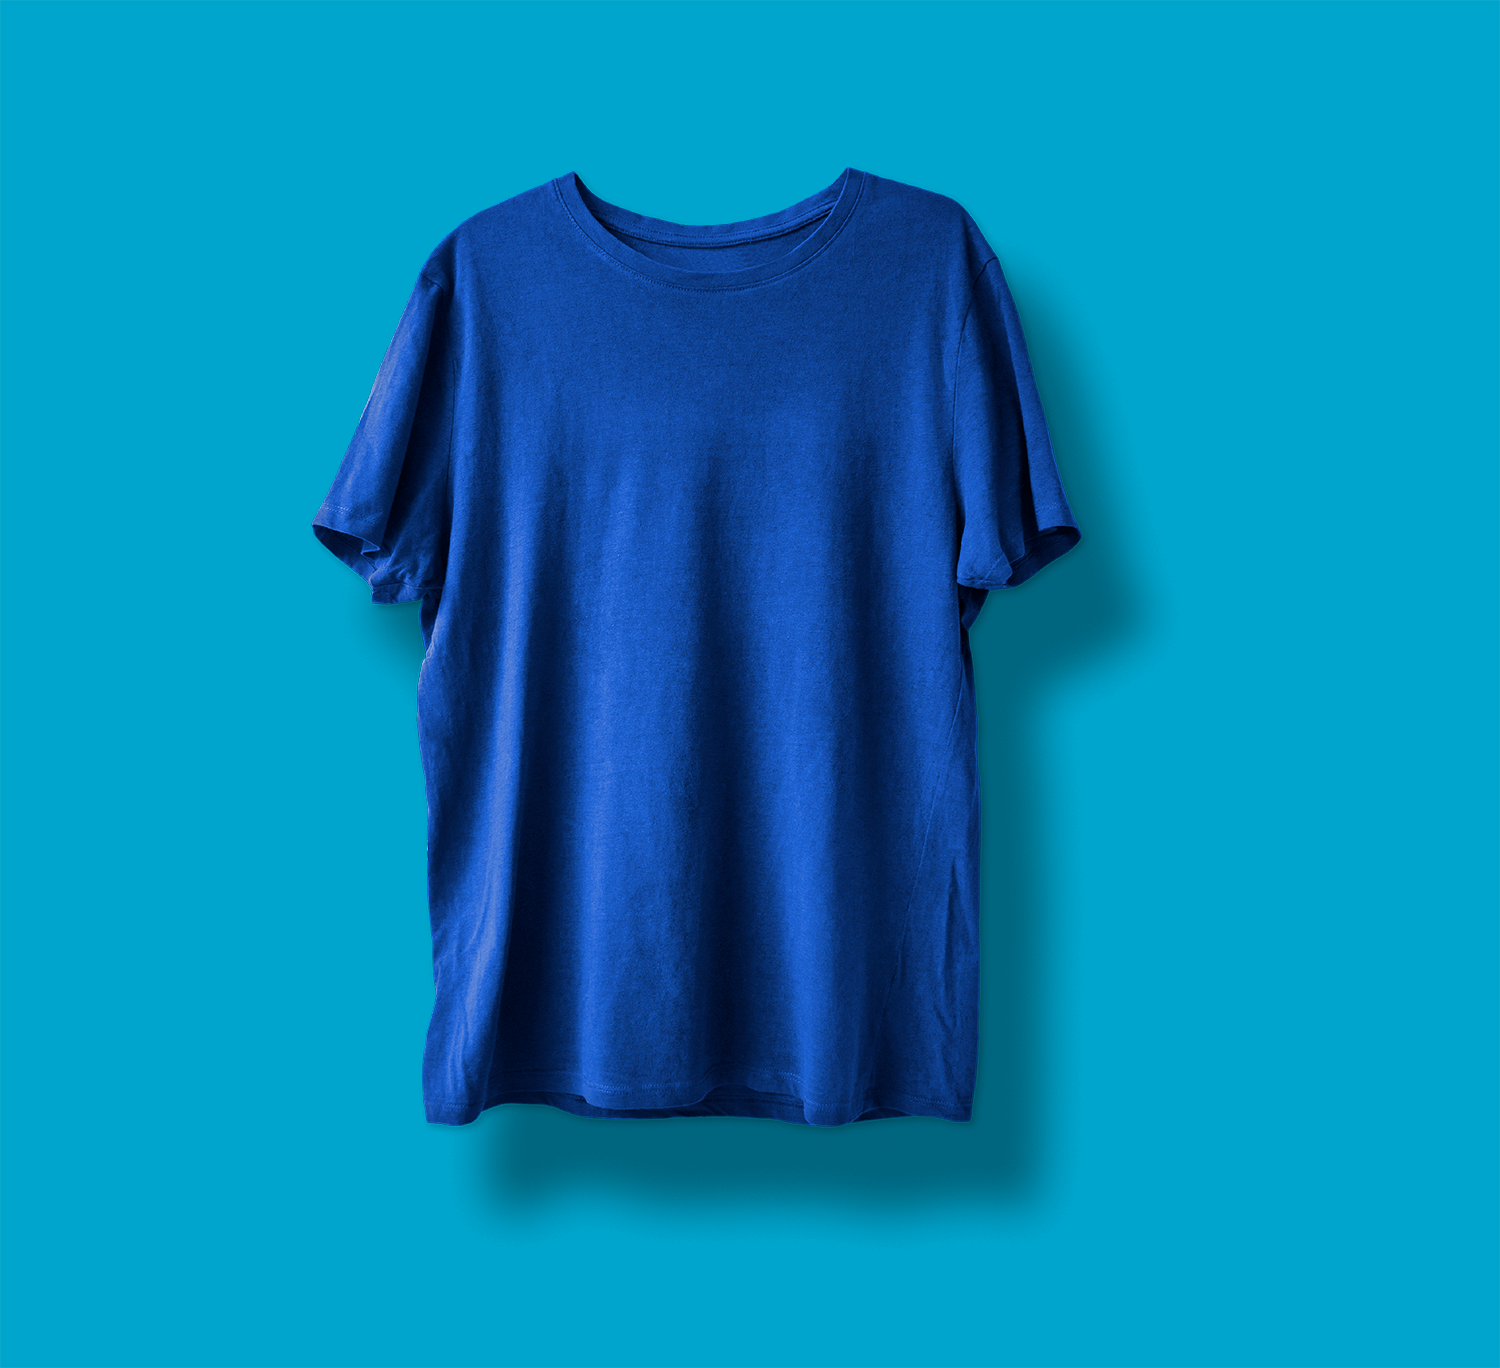 blue tshirt